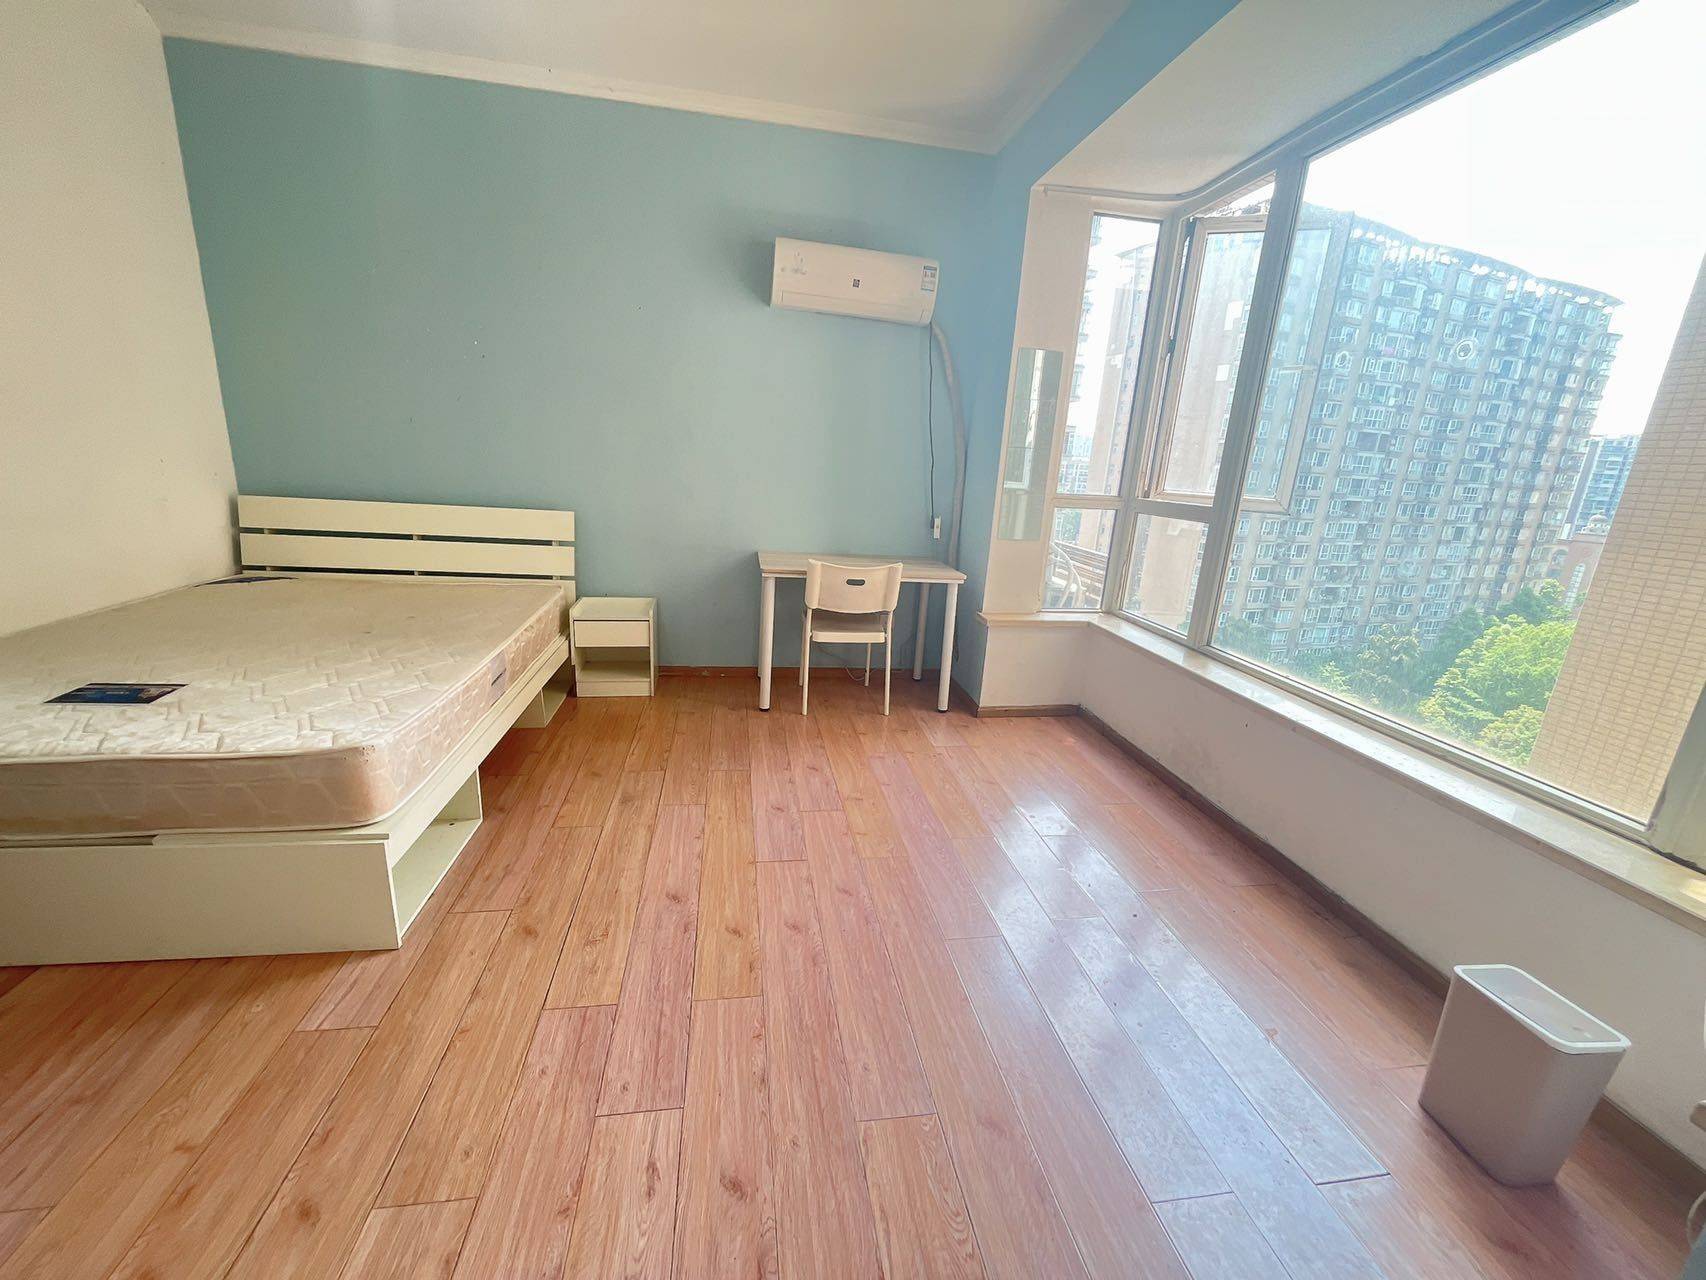 Chengdu-Wuhou-Cozy Home,Clean&Comfy,No Gender Limit,Hustle & Bustle,“Friends”